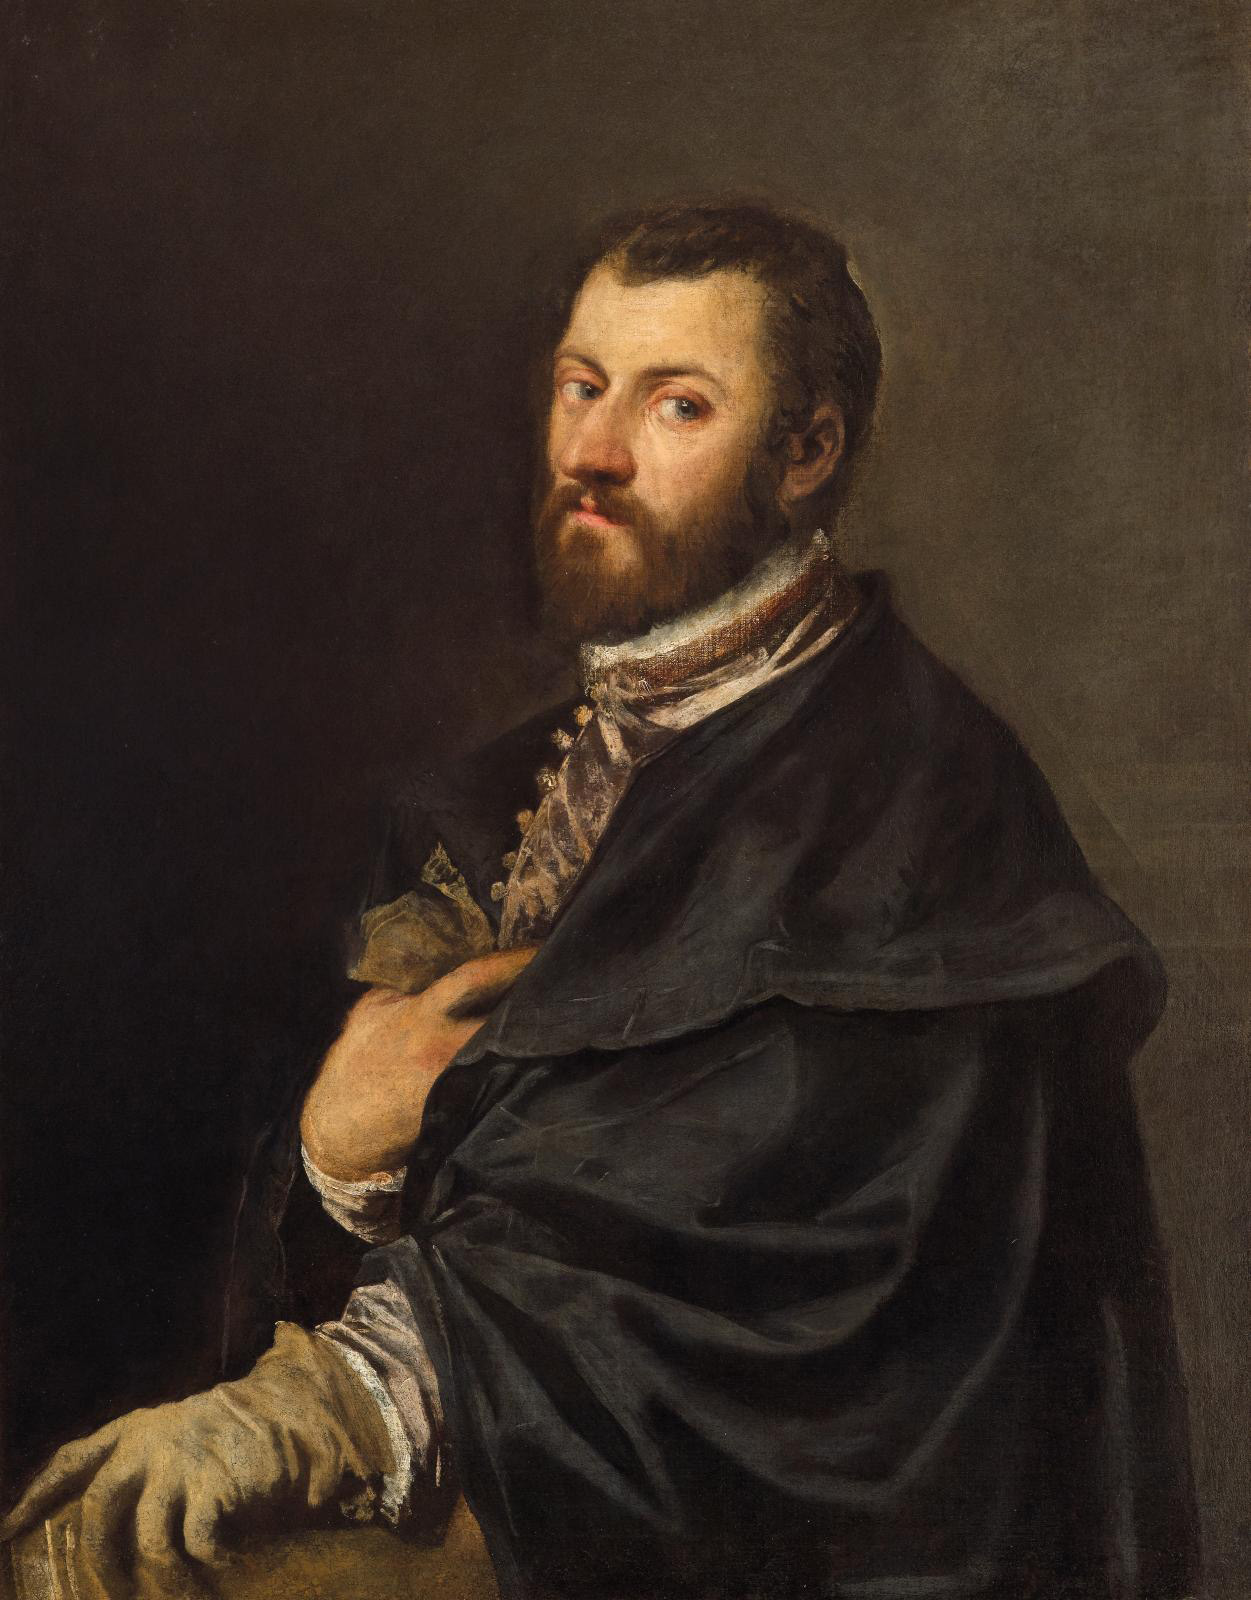 A Royal Portrait by Titian